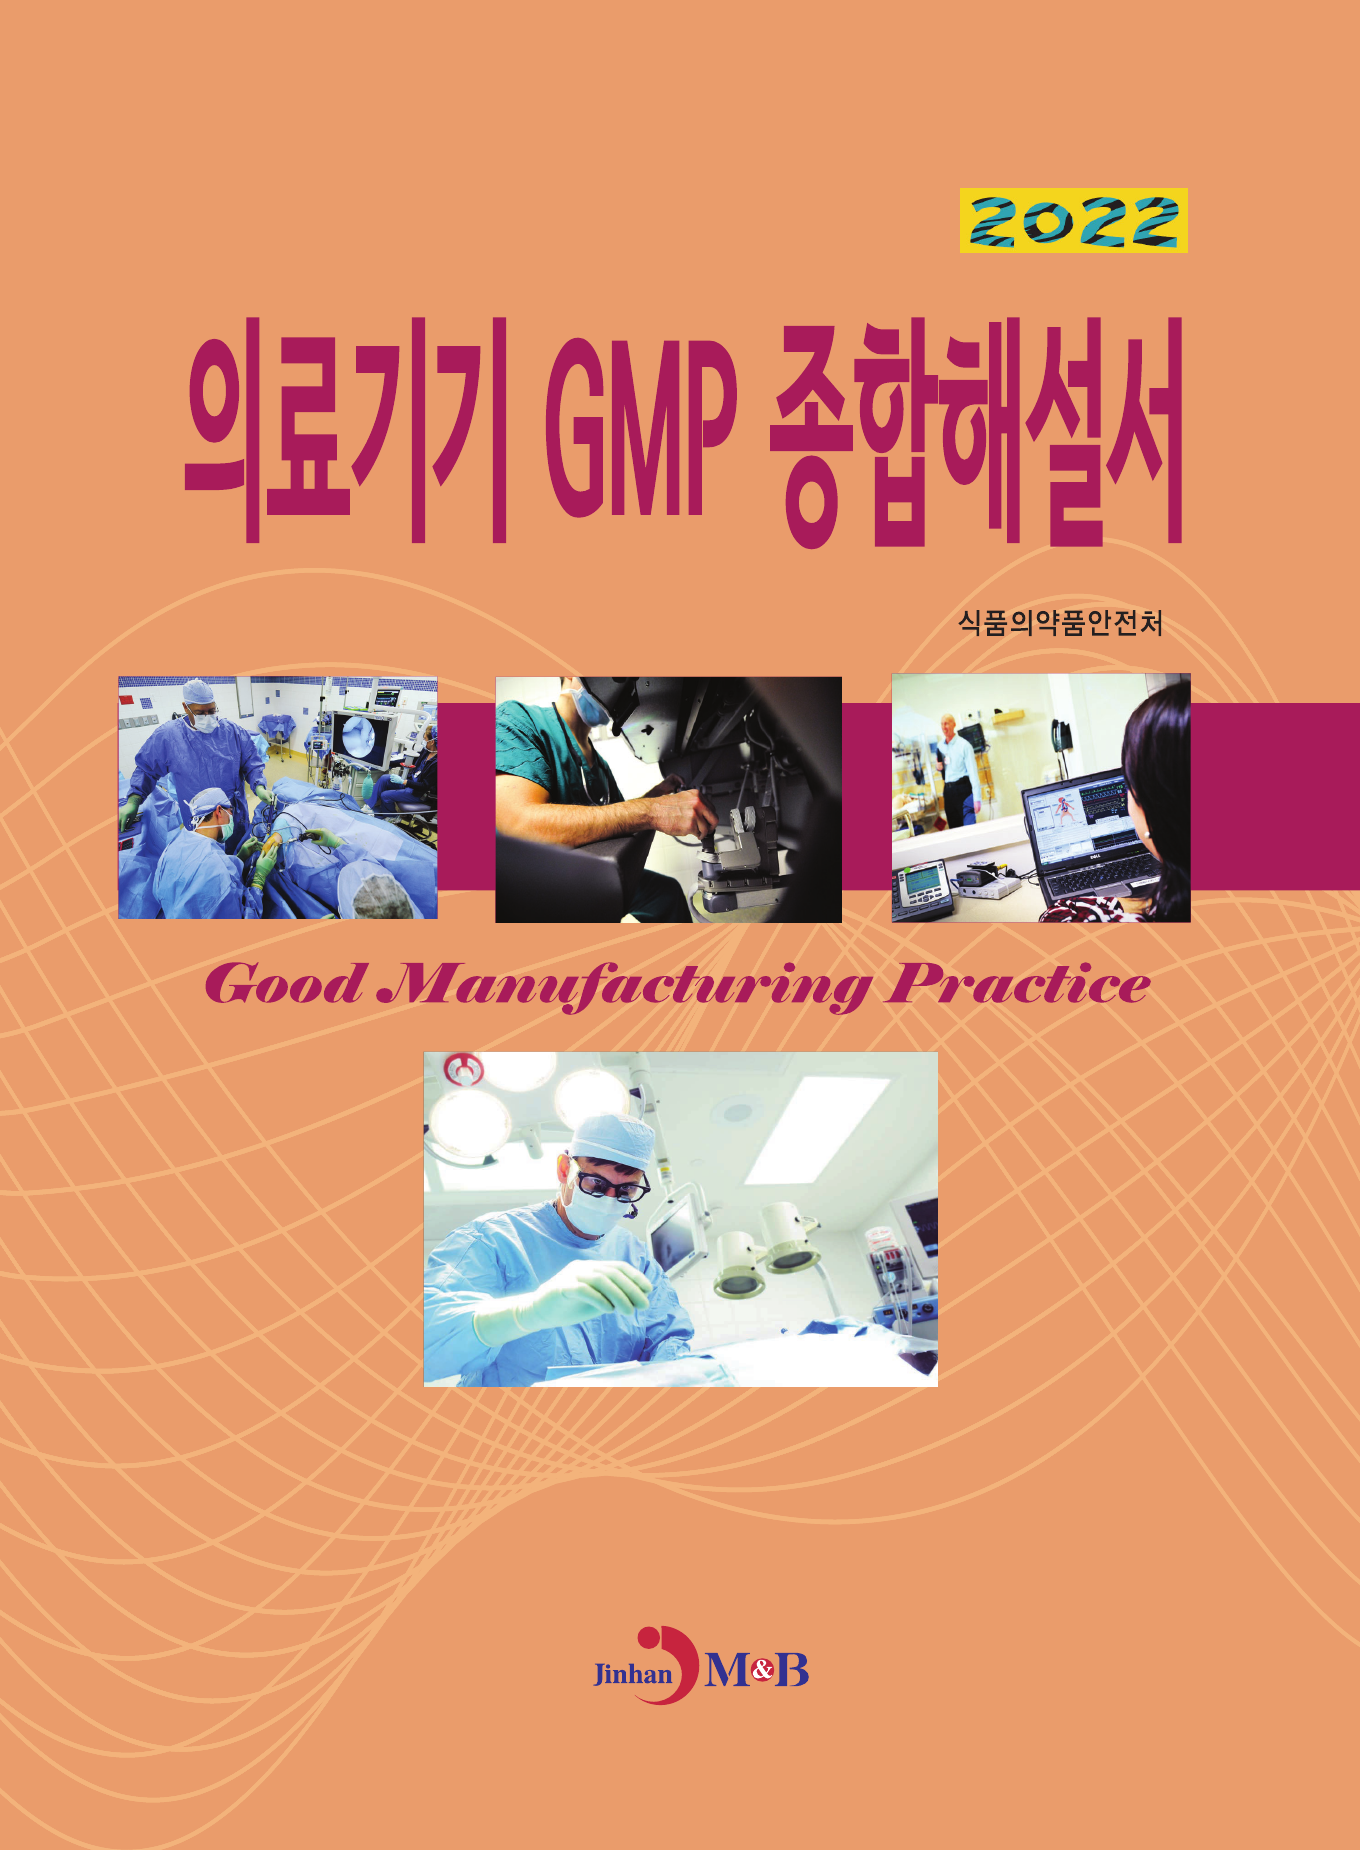 의료기기 GMP 종합해설서(2022)